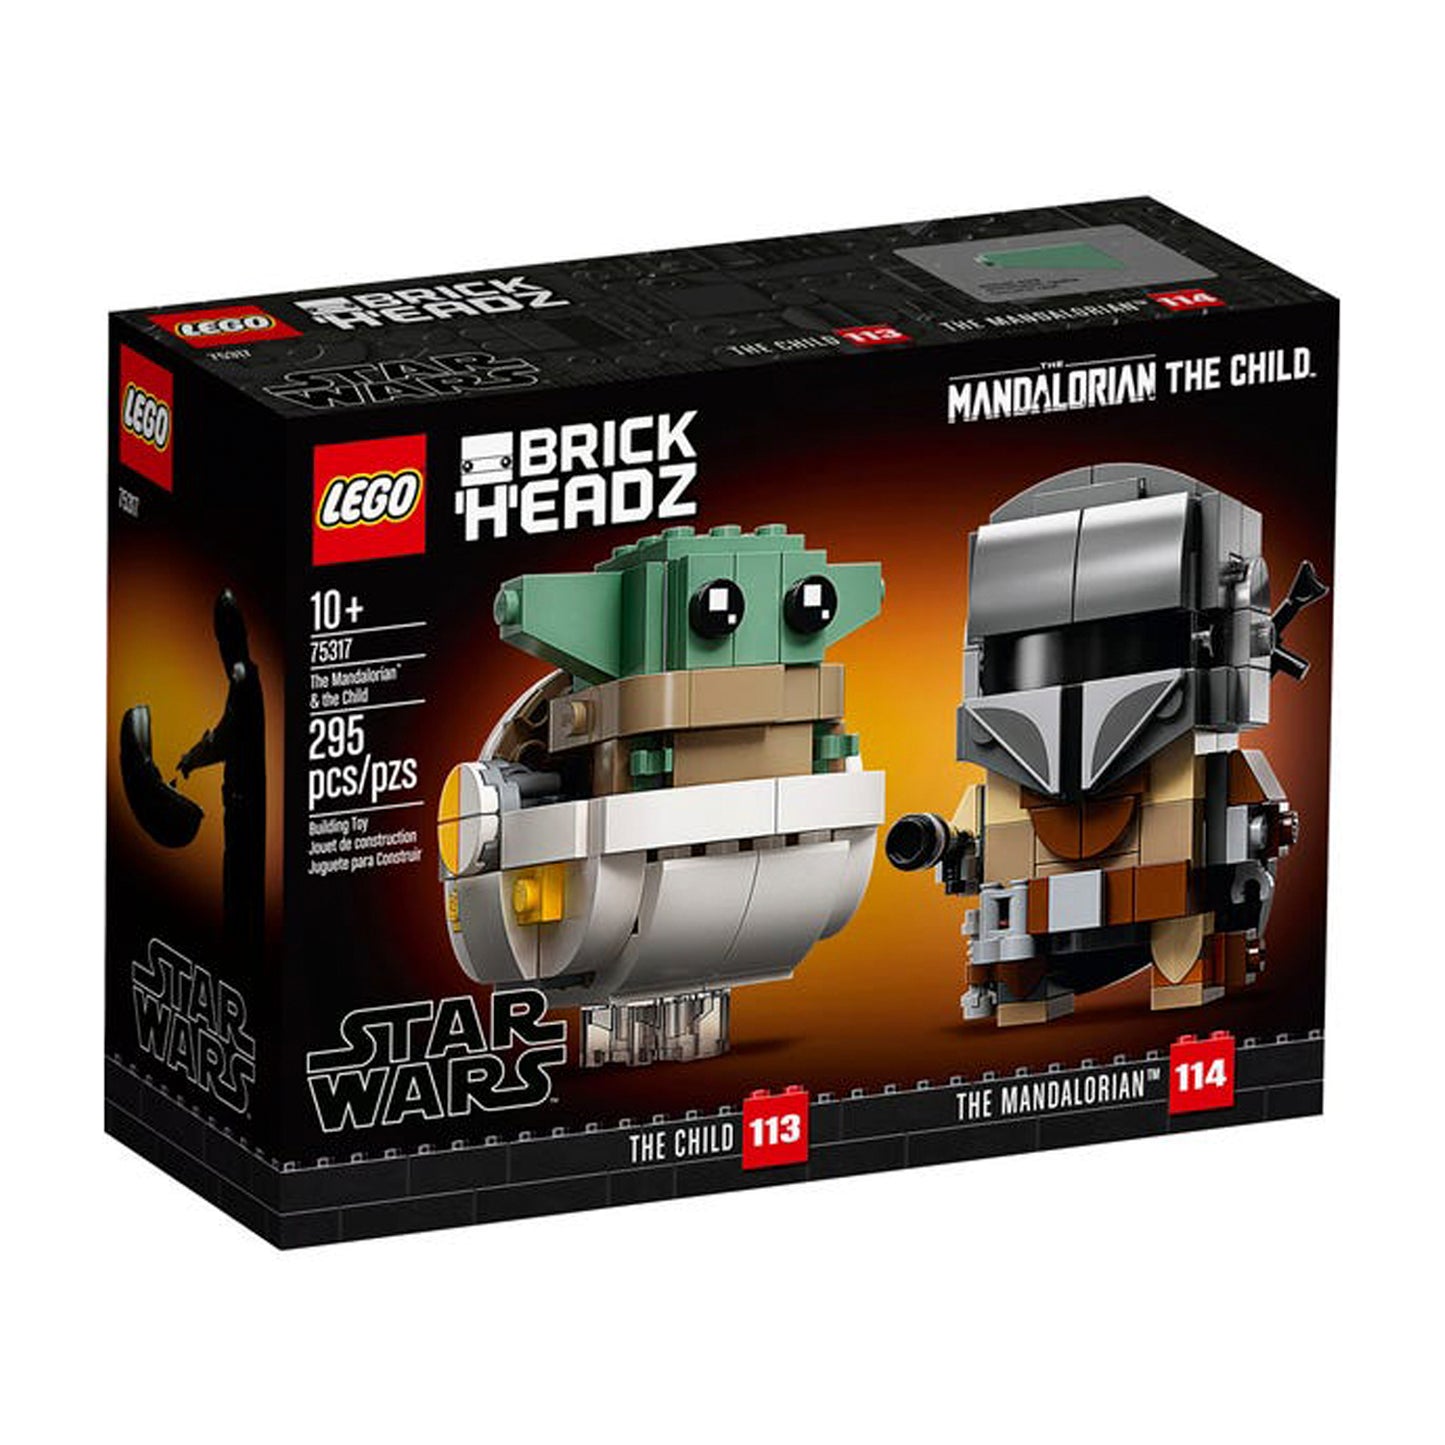 Lego Star Wars Brick Headz El Mandaloriano y El Niño 75317